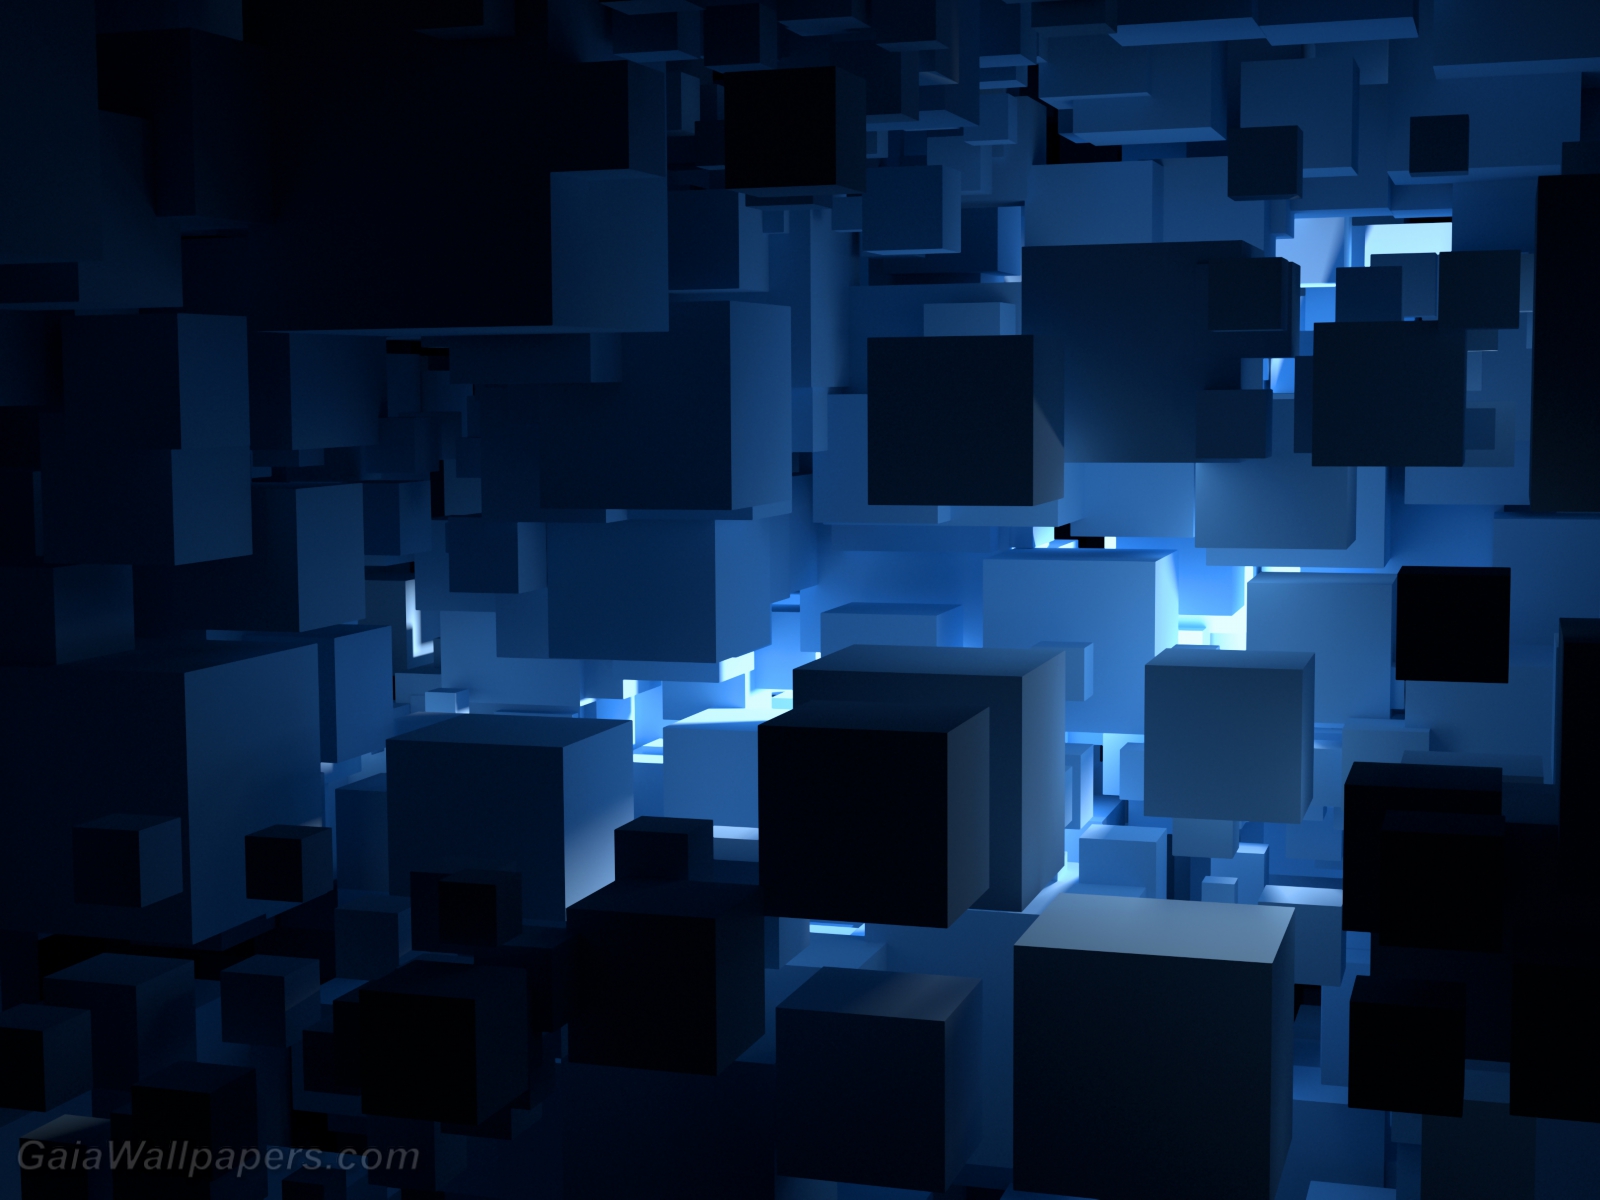 Monde virtuel de cubes bleus - Fonds d'écran gratuits